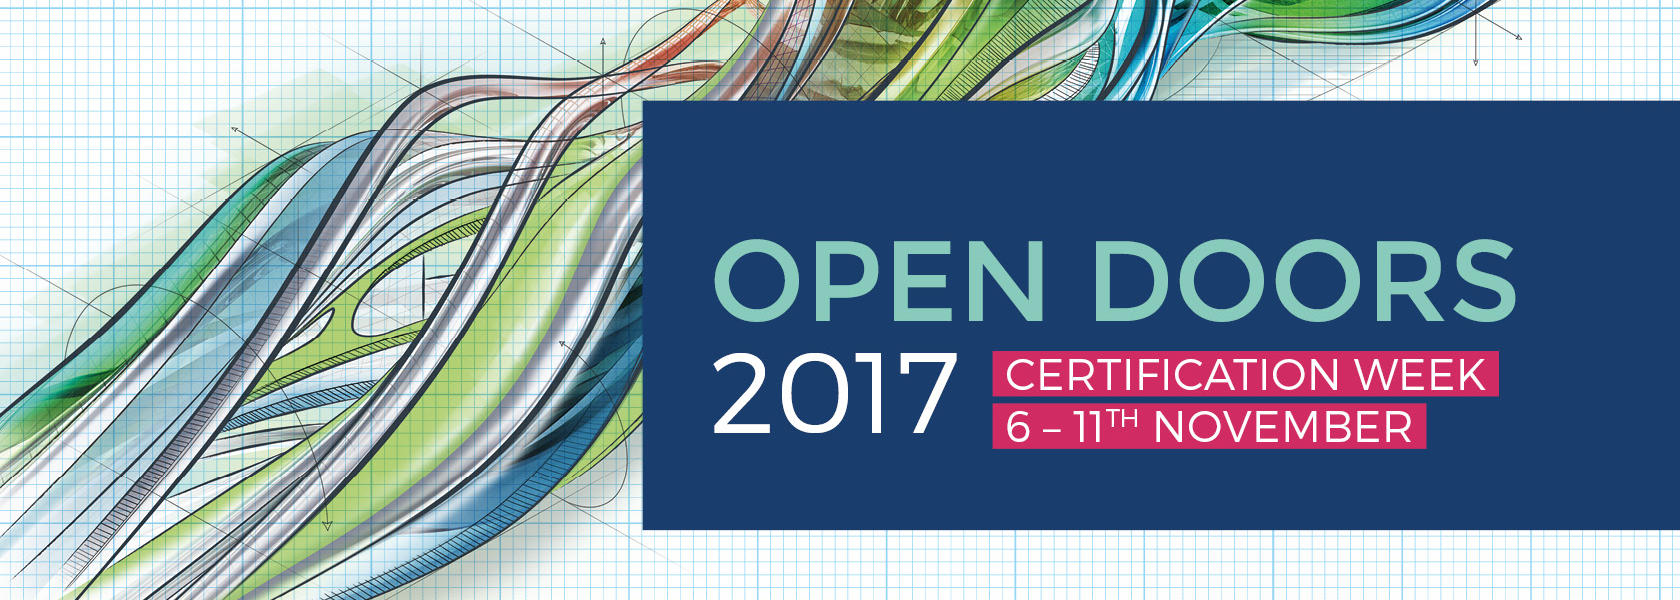 Open Doors 2017 - Certification Week, November 6-11